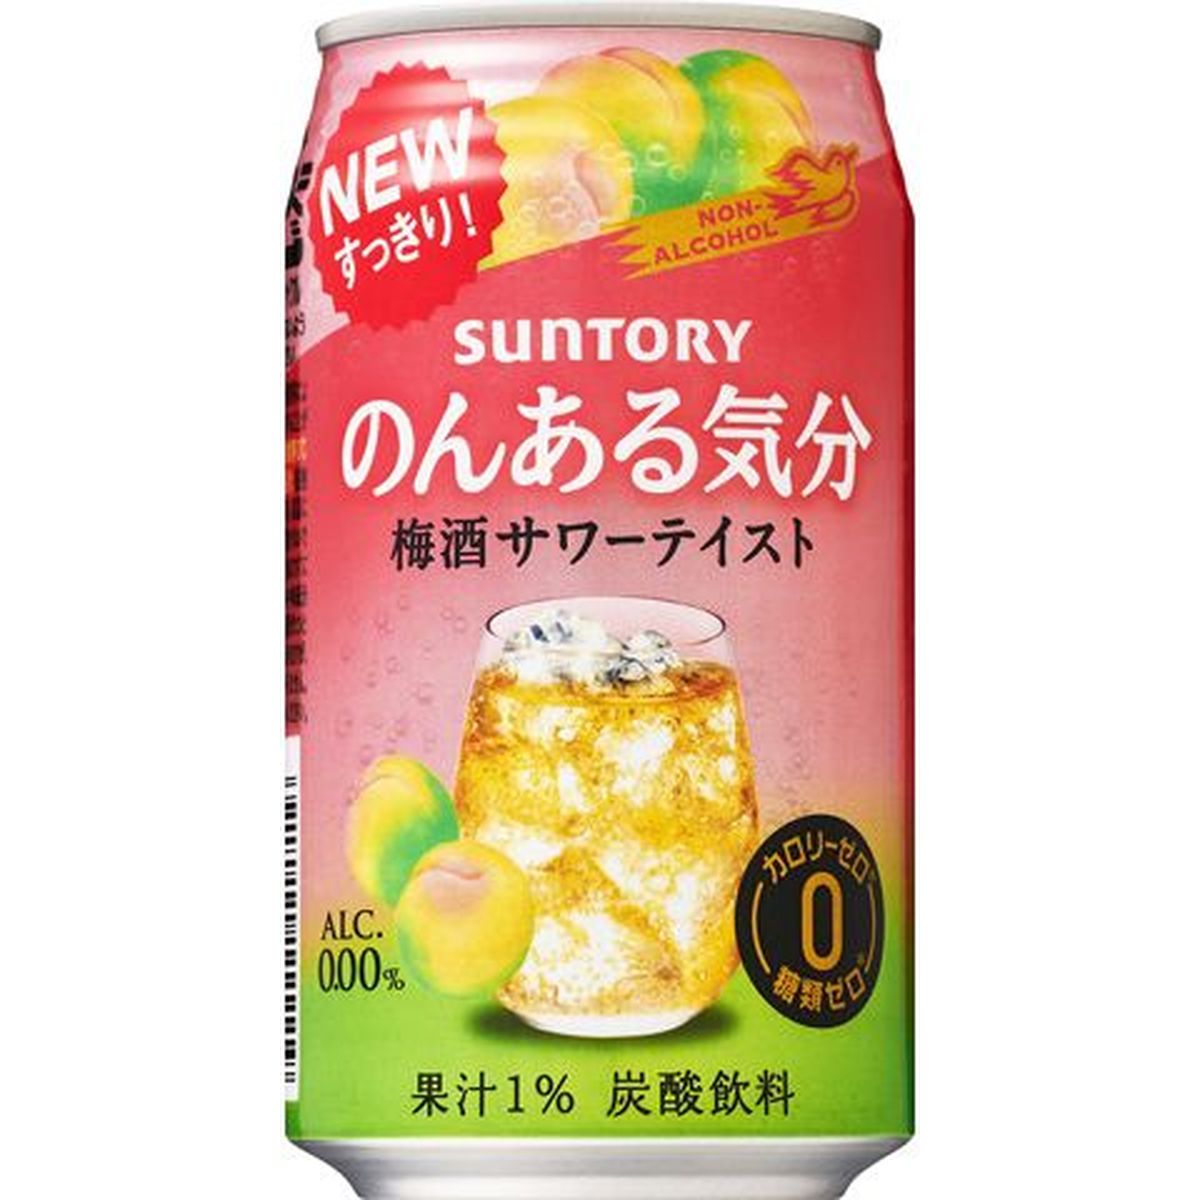 【6個入リ】サントリー ノンアル気分 梅酒サワーテイスト缶 350ml